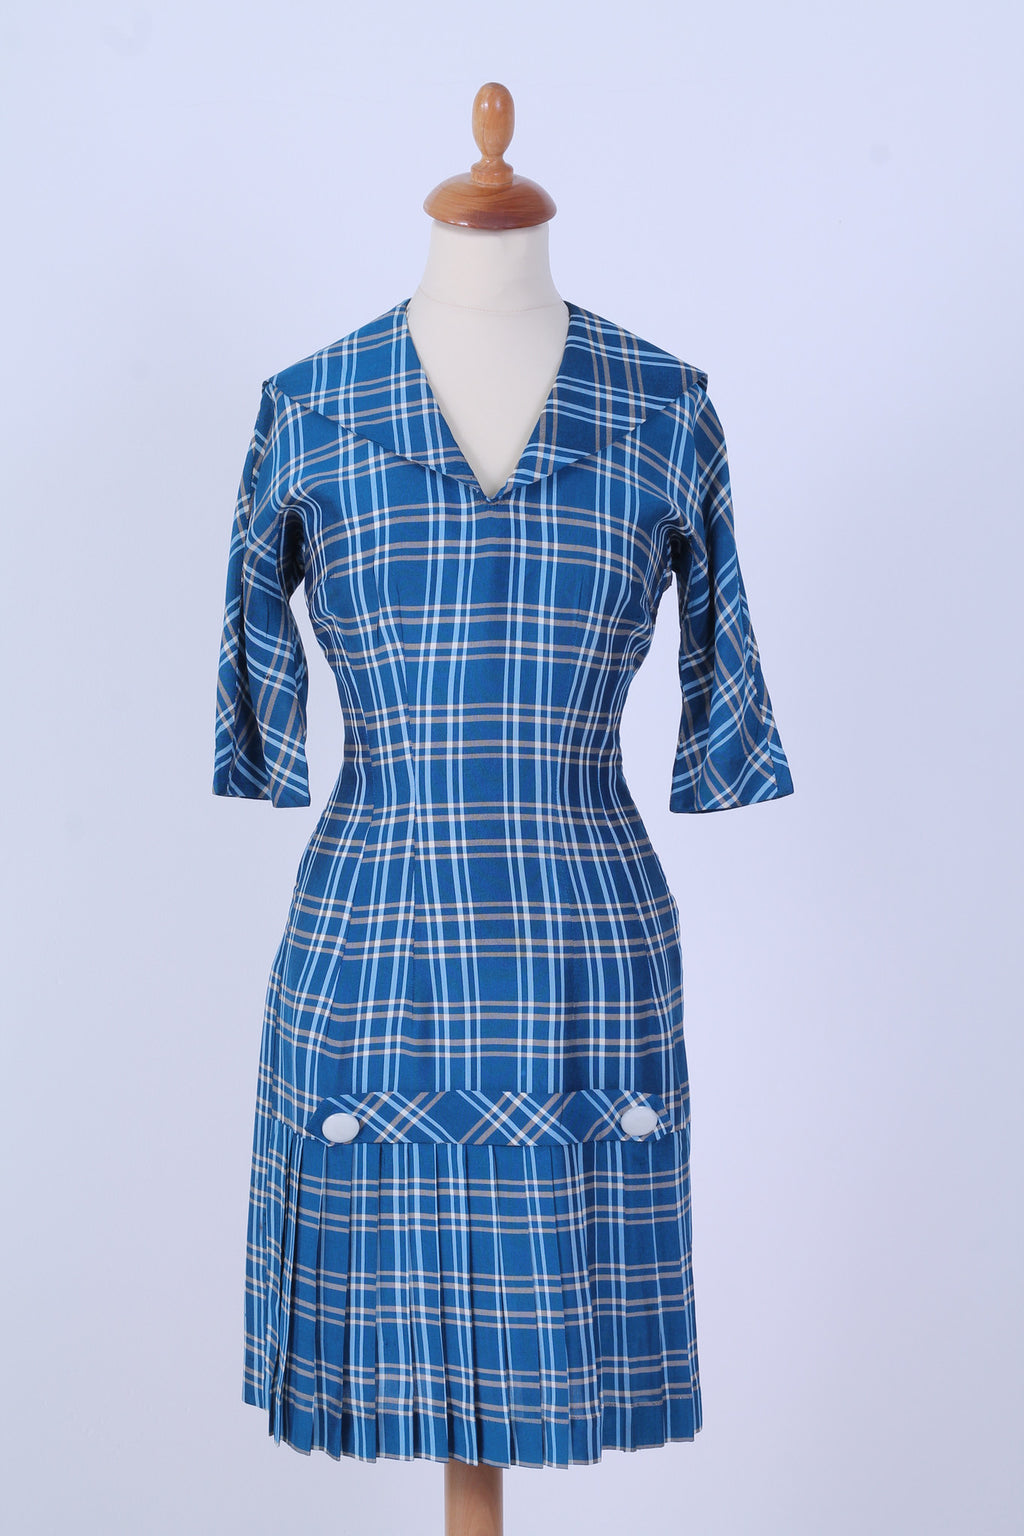 Solgt vintage tøj - Ternet hverdagskjole, USA, XS-S - Solgt - Vintage Divine - 1